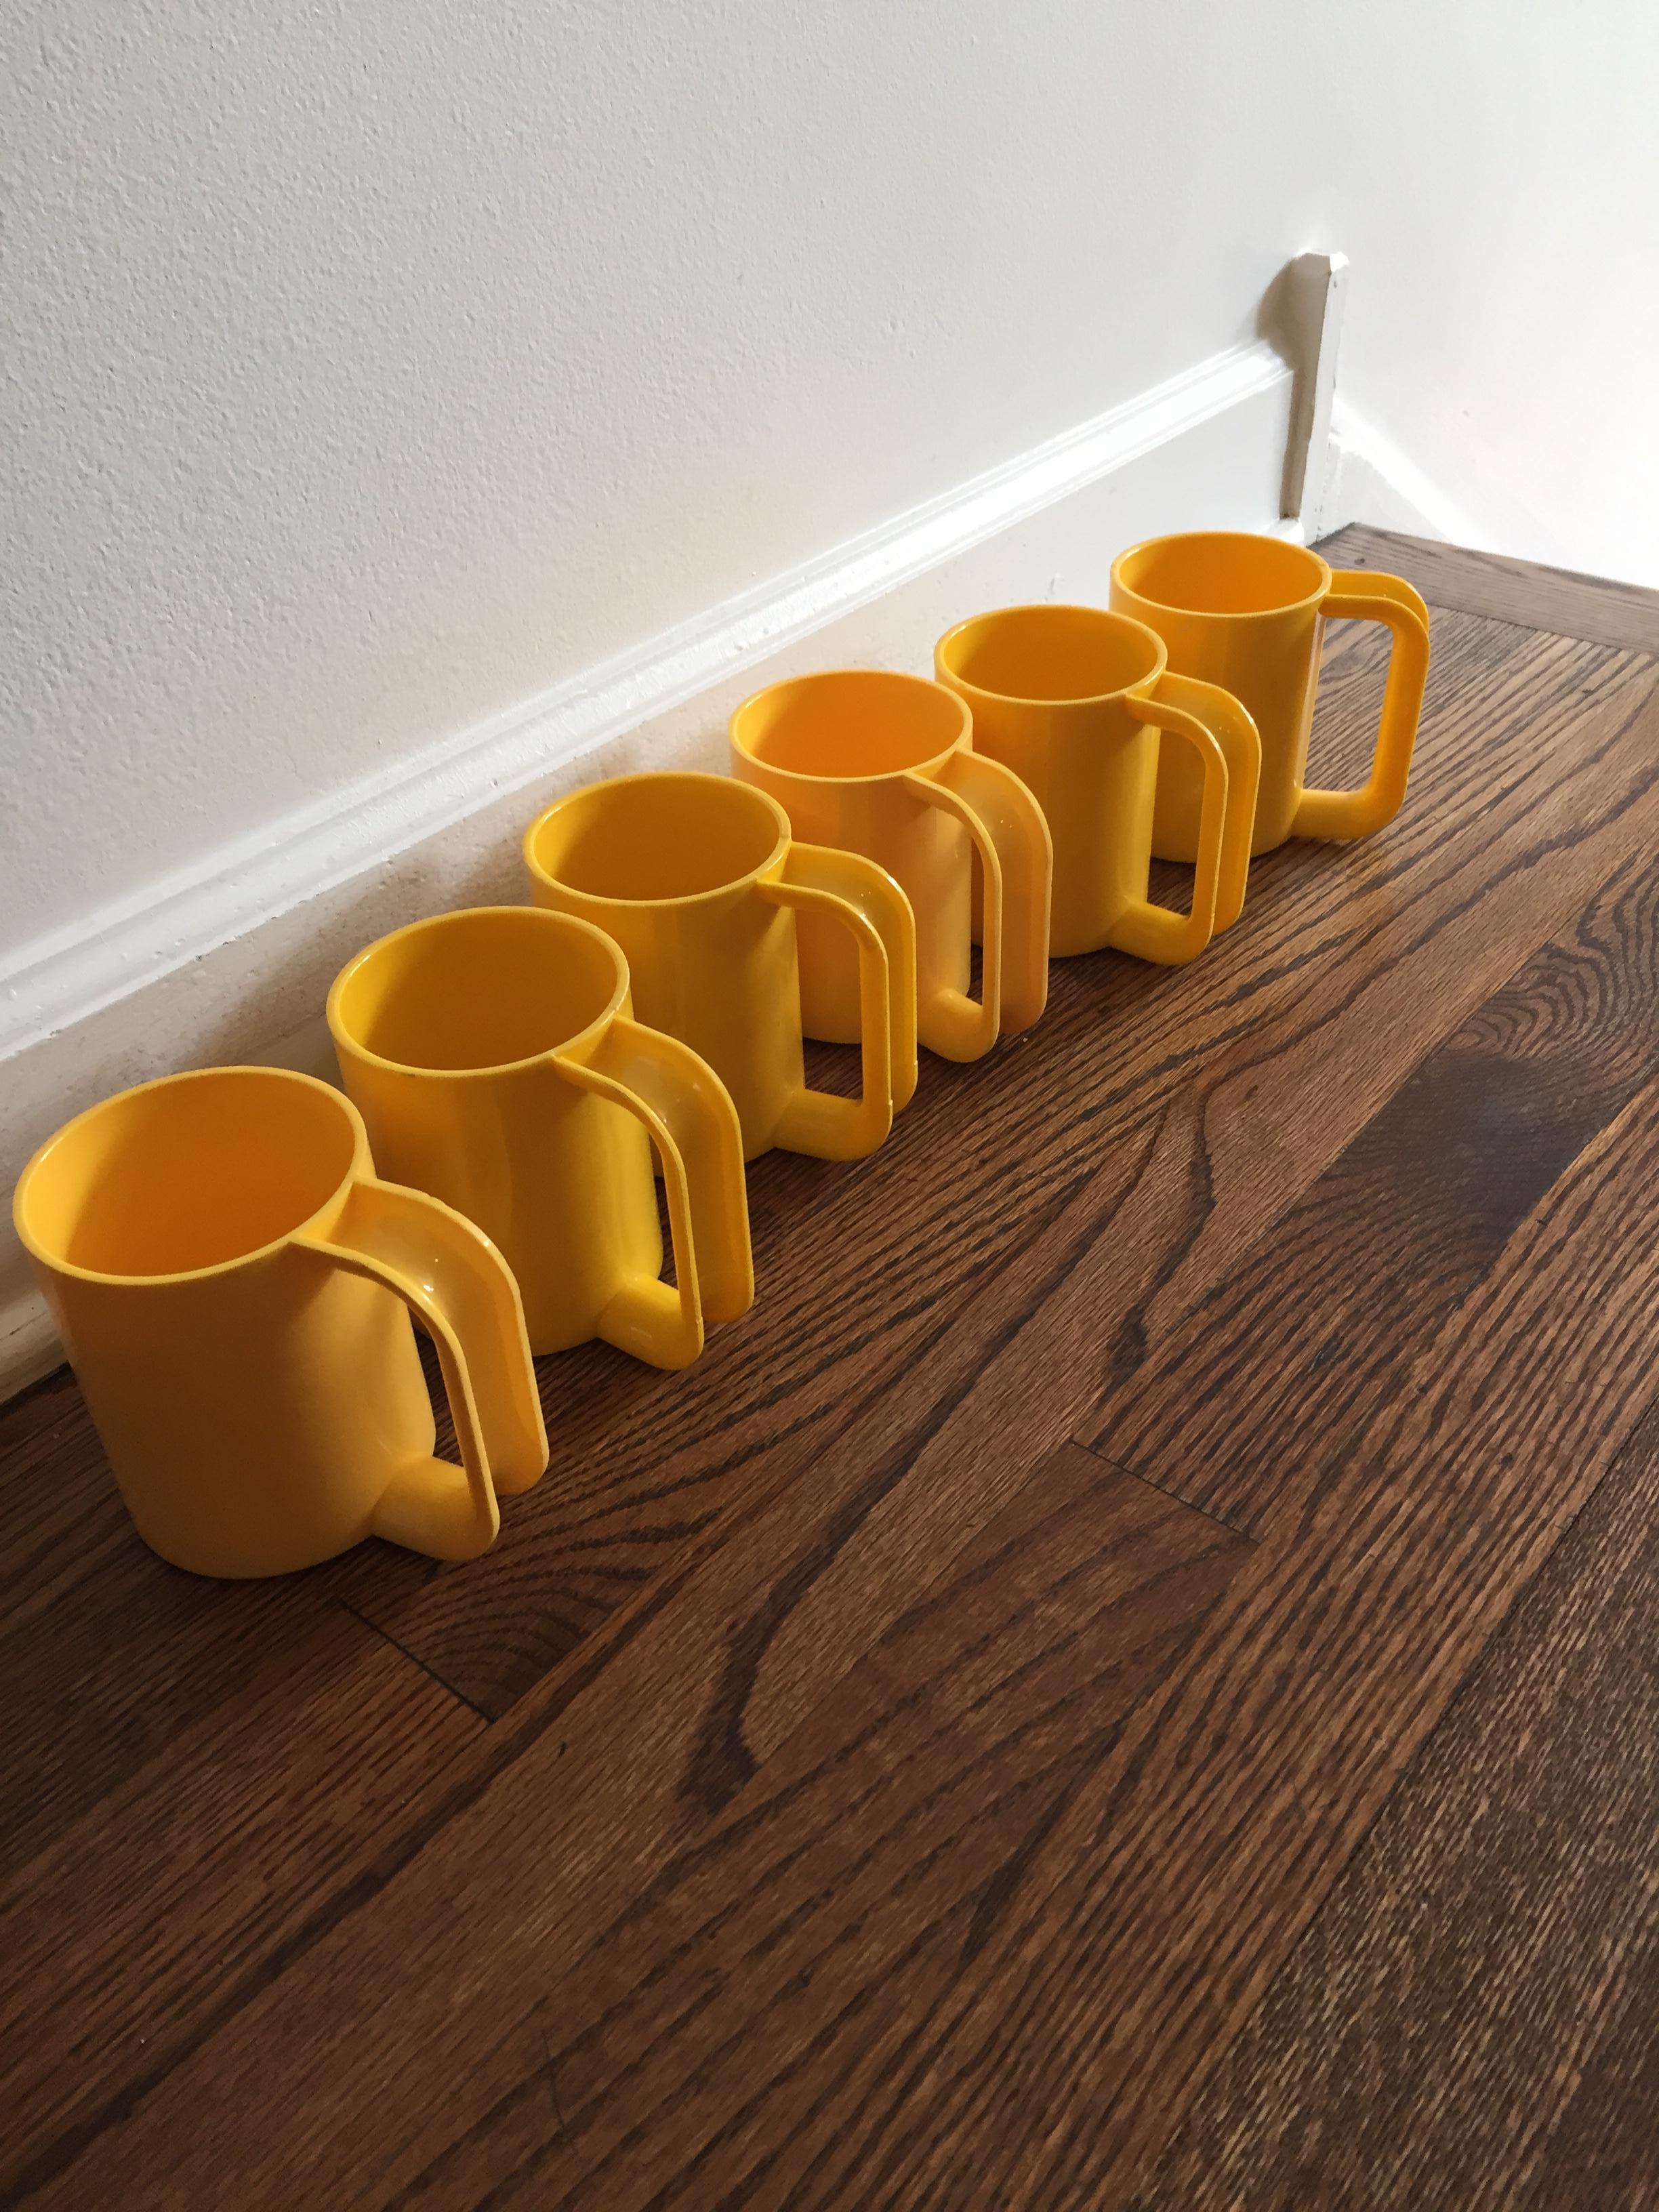 heller cups